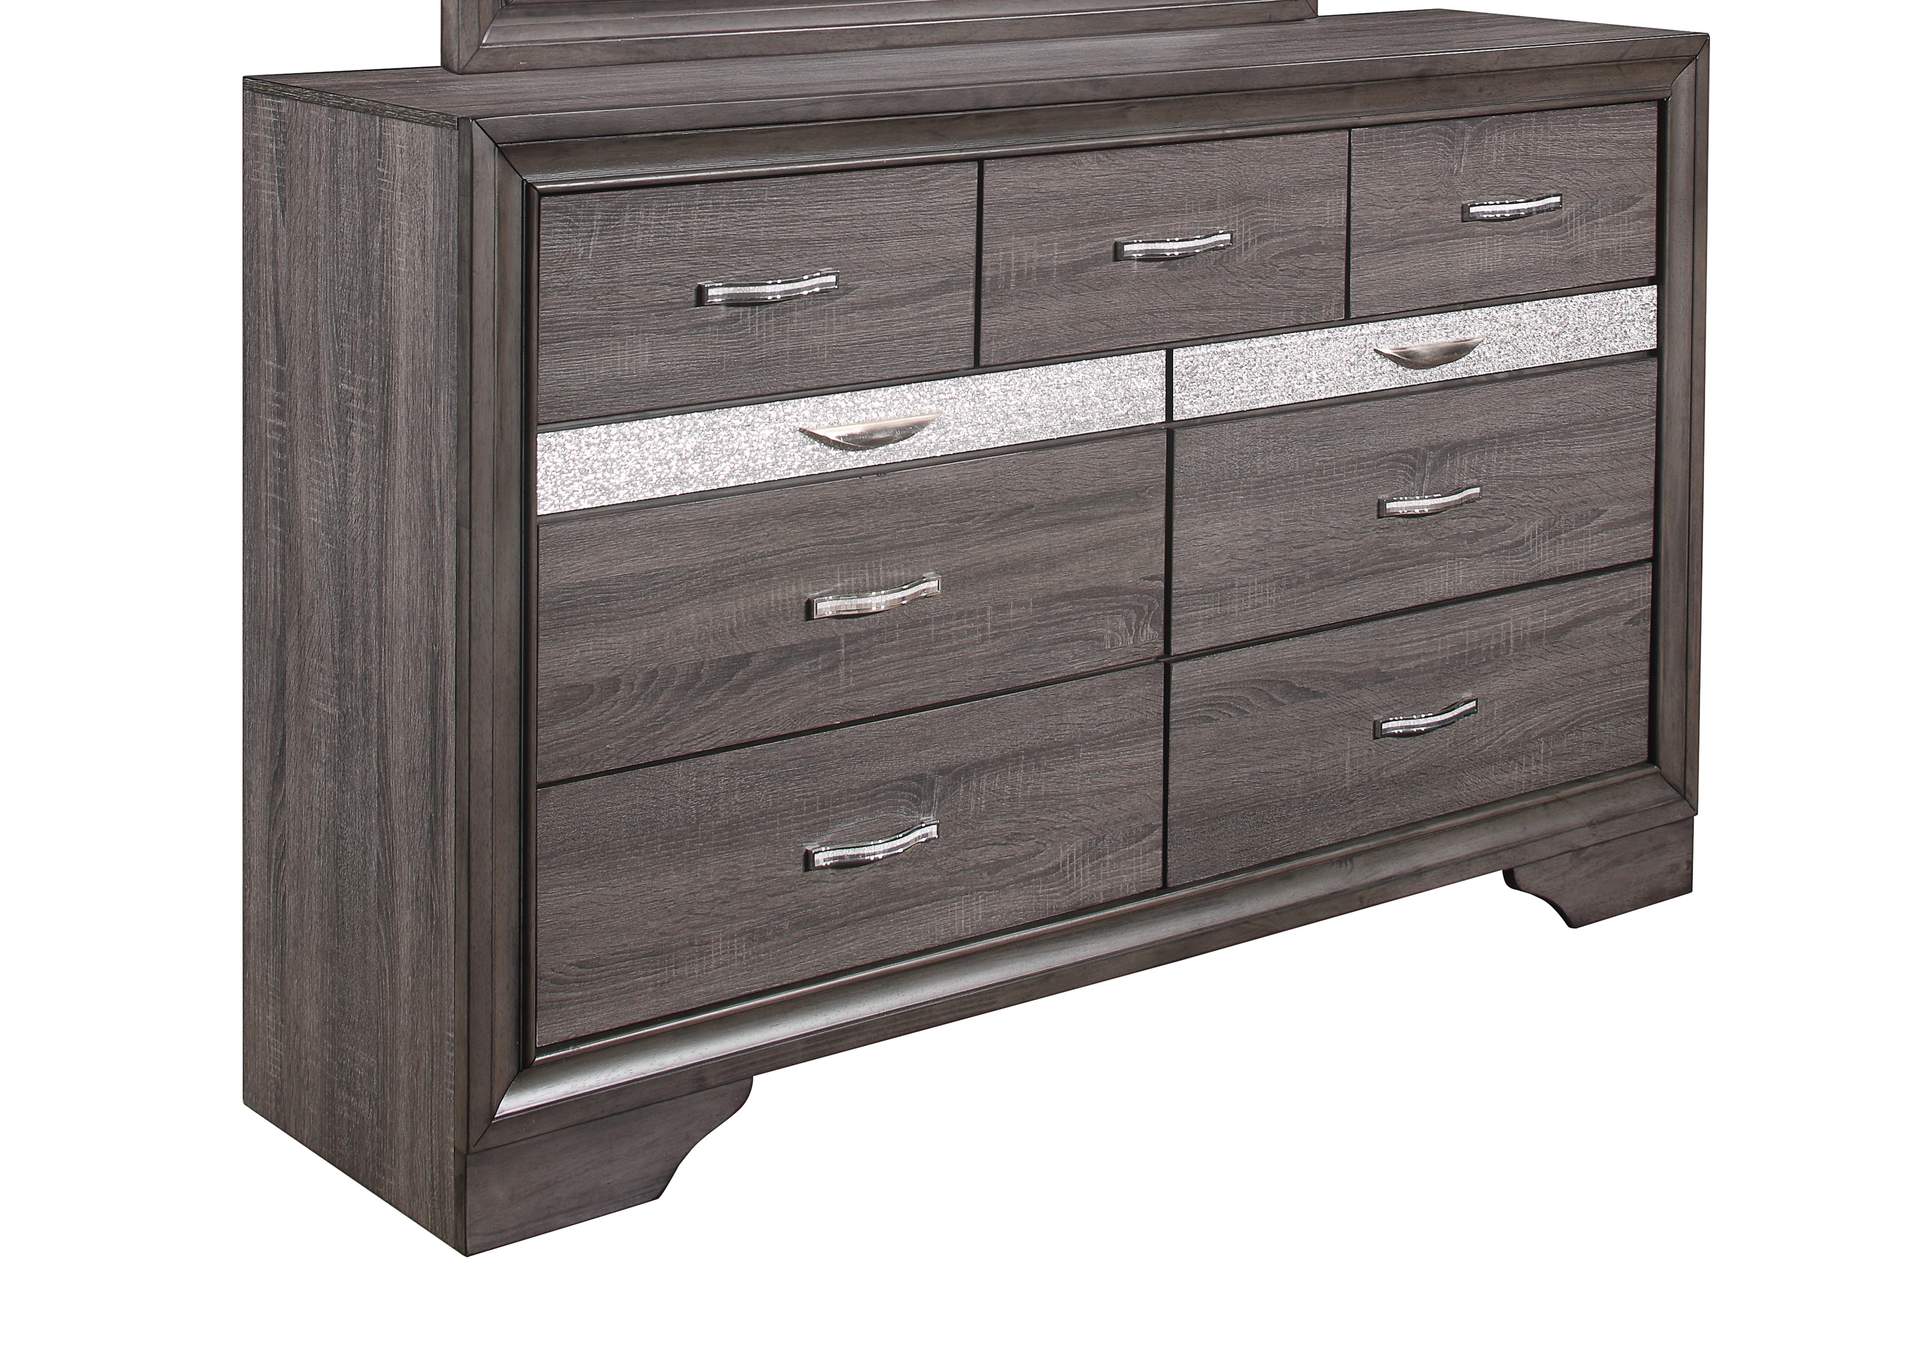 Grey Seville Dresser,Global Furniture USA